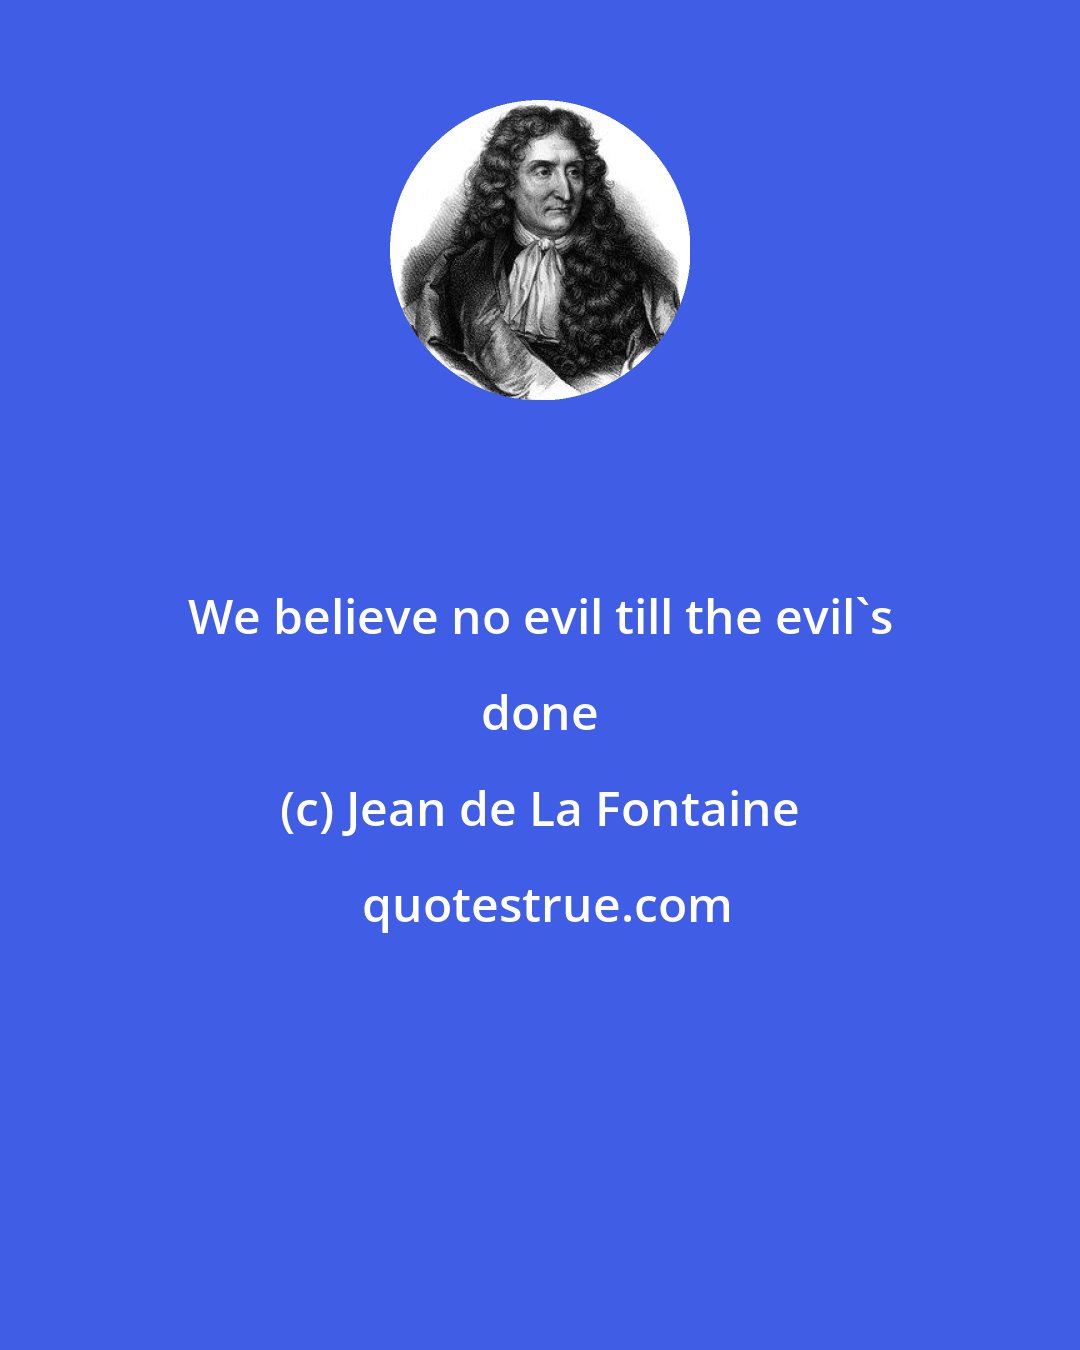 Jean de La Fontaine: We believe no evil till the evil's done